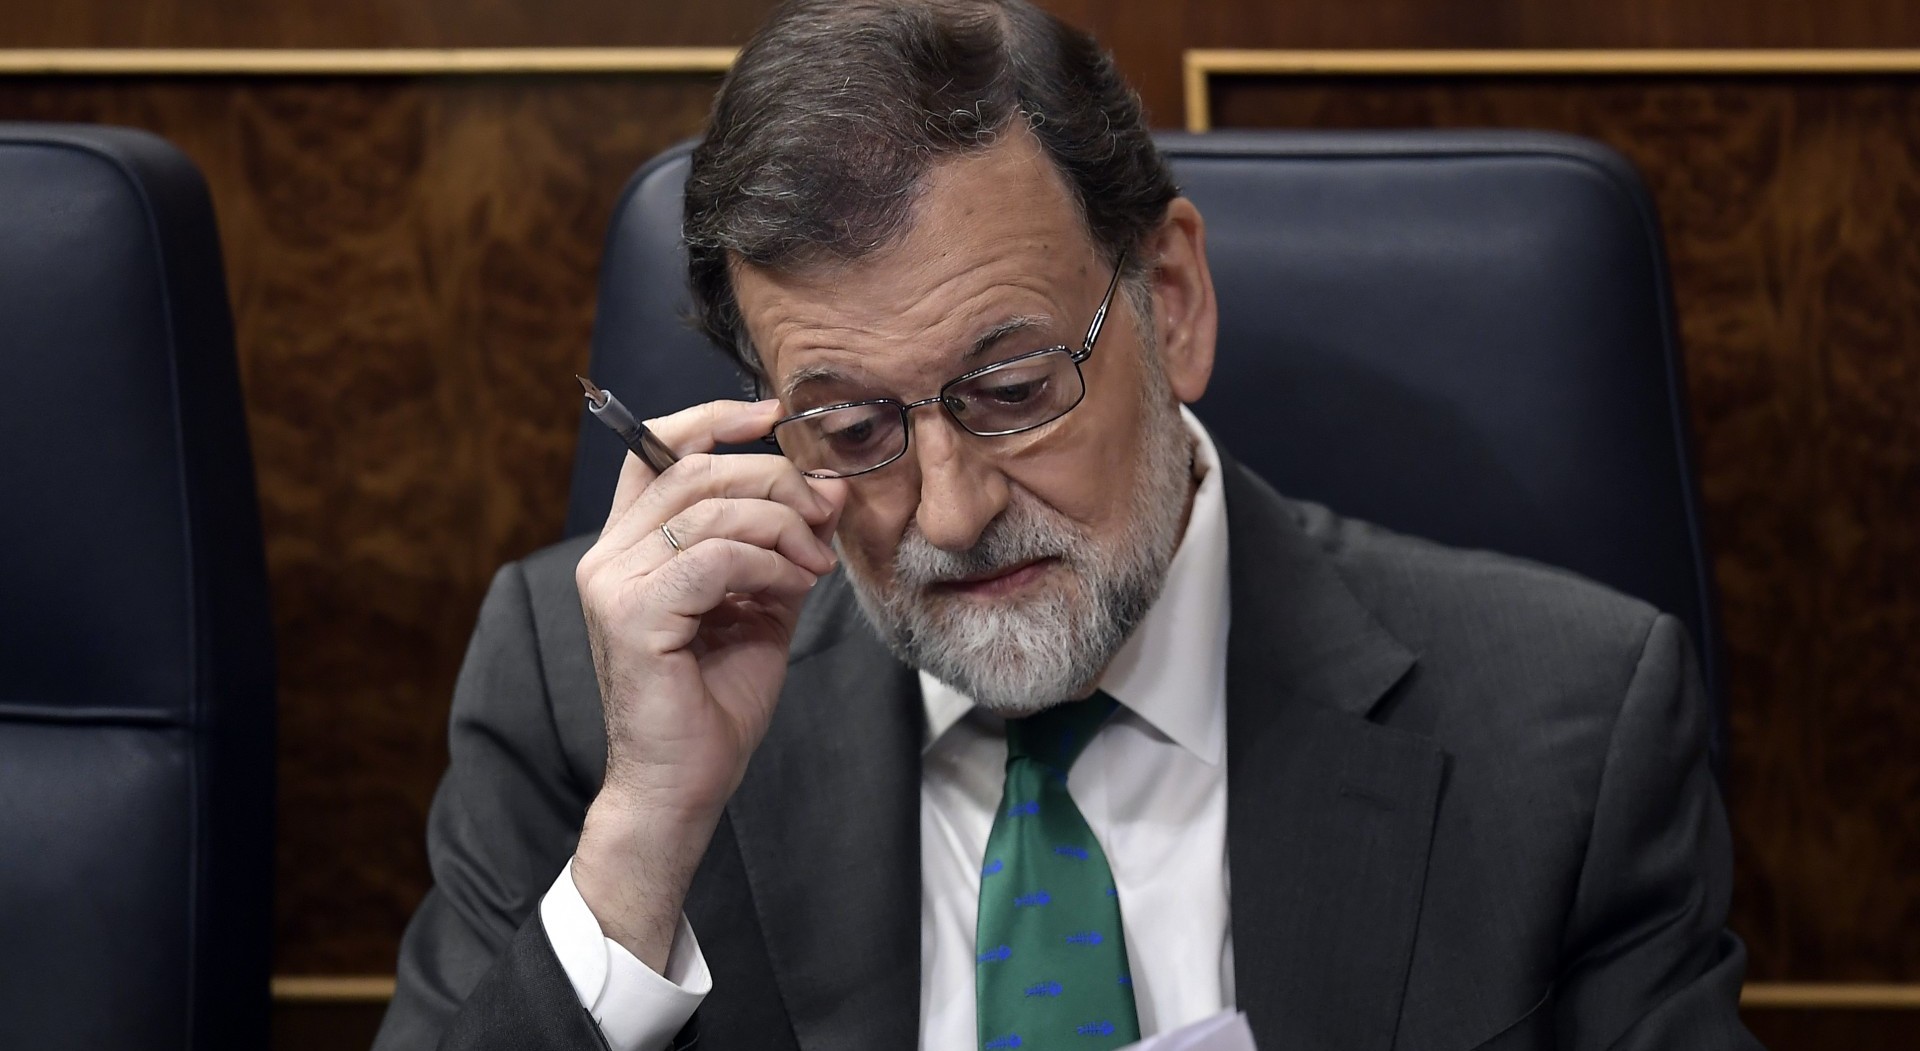 Mariano Rajoy dejó la presidencia de España tras perder una moción de censura en junio de 2018 (AFP PHOTO / OSCAR DEL POZO)